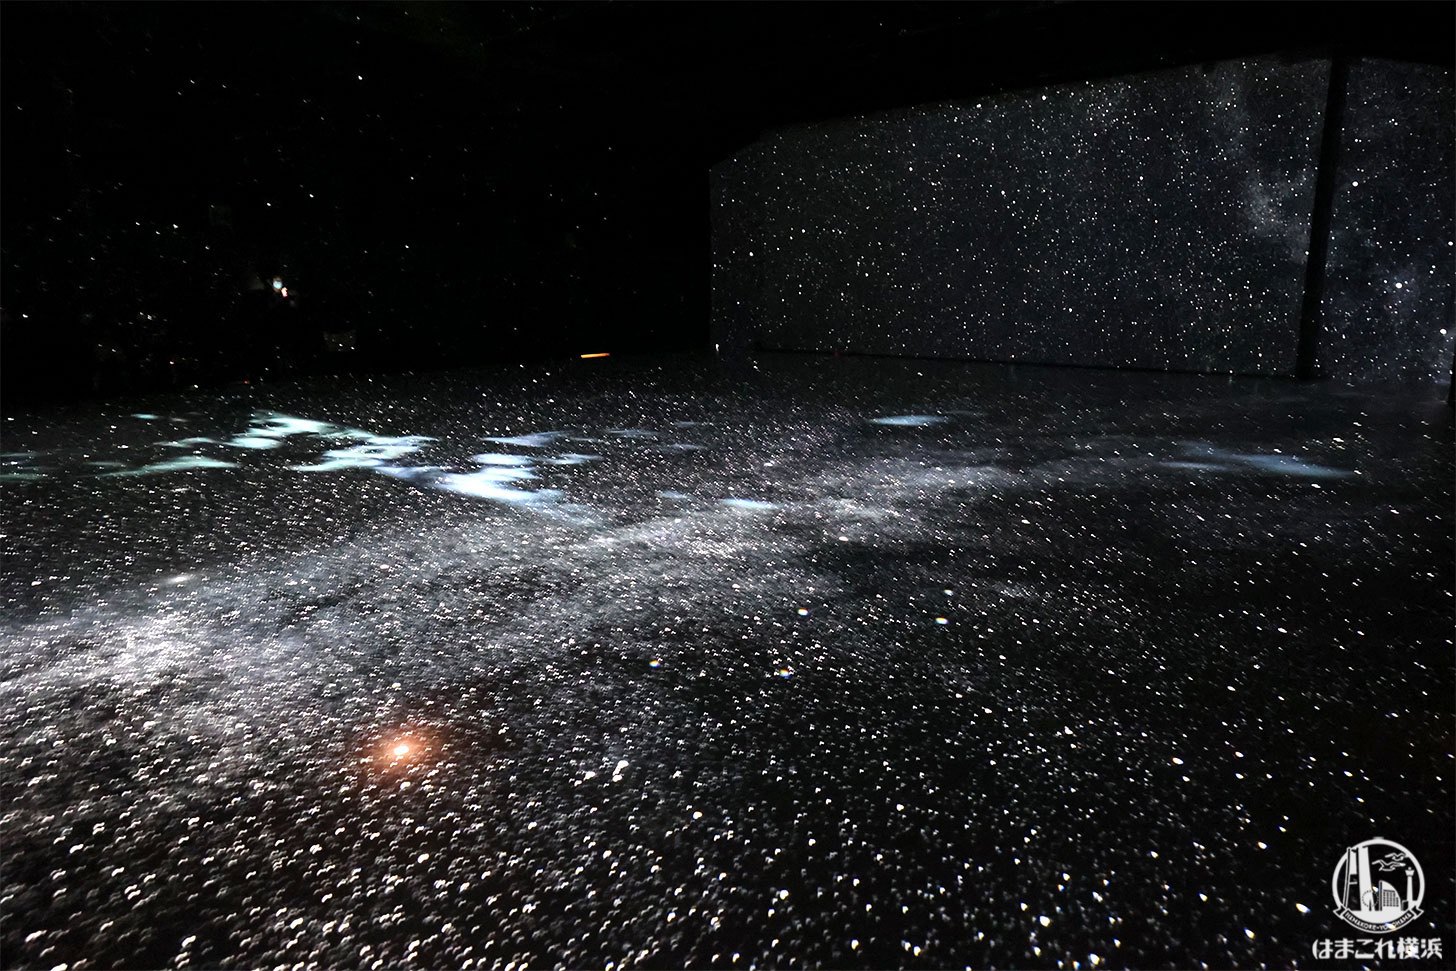 赤レンガ・アートプラネタリウム「星と歩く」体験風景